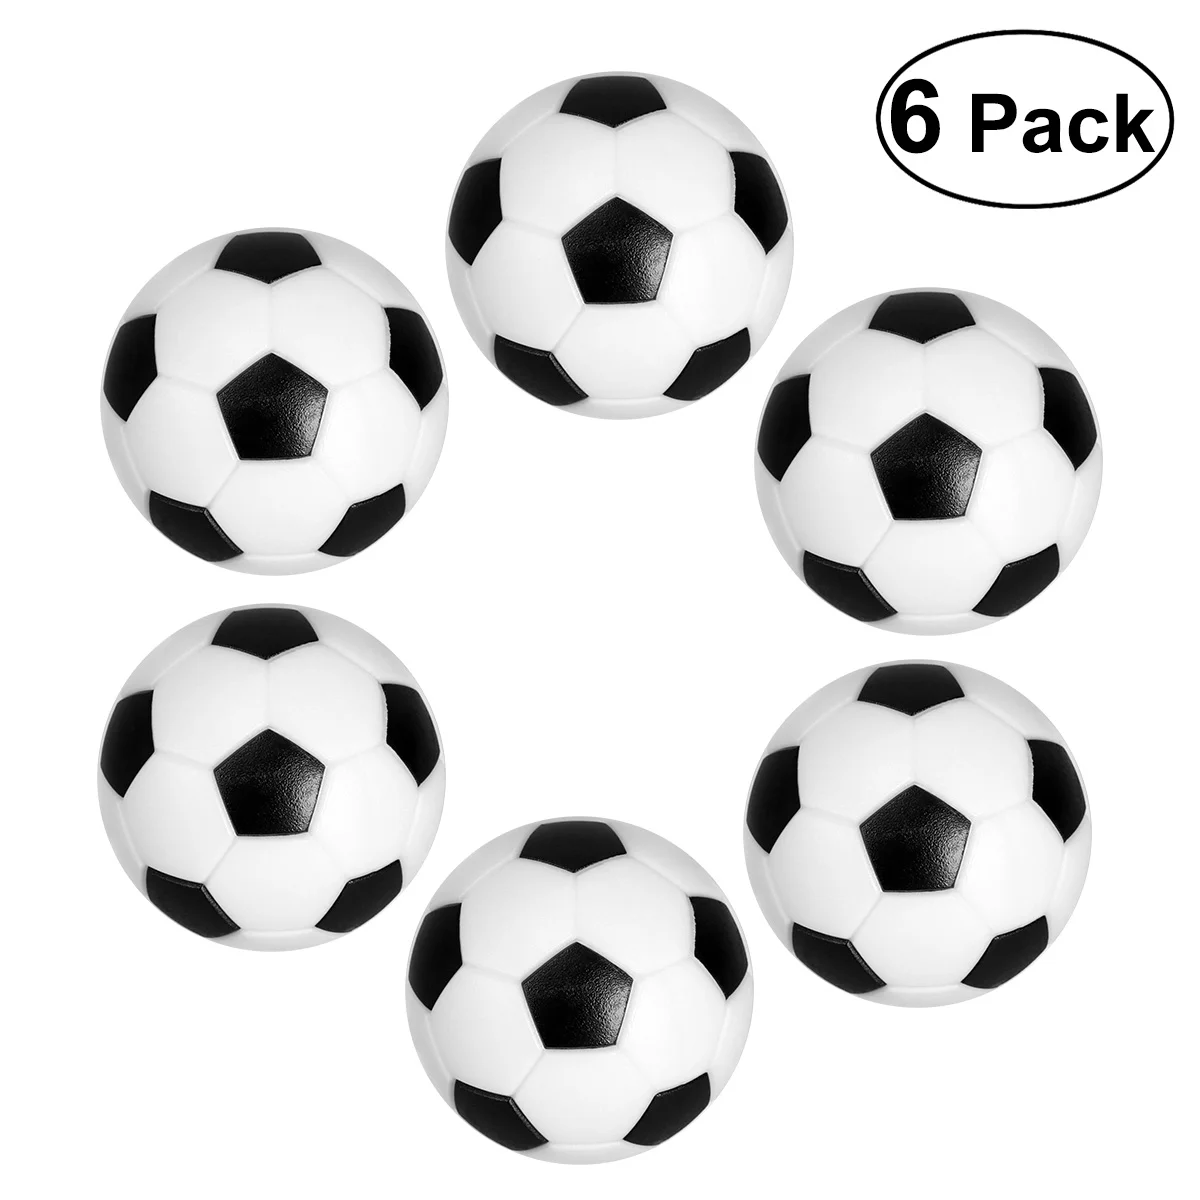 

LUOEM 6 шт. 32 мм черные/белые мячи для настольного футбола